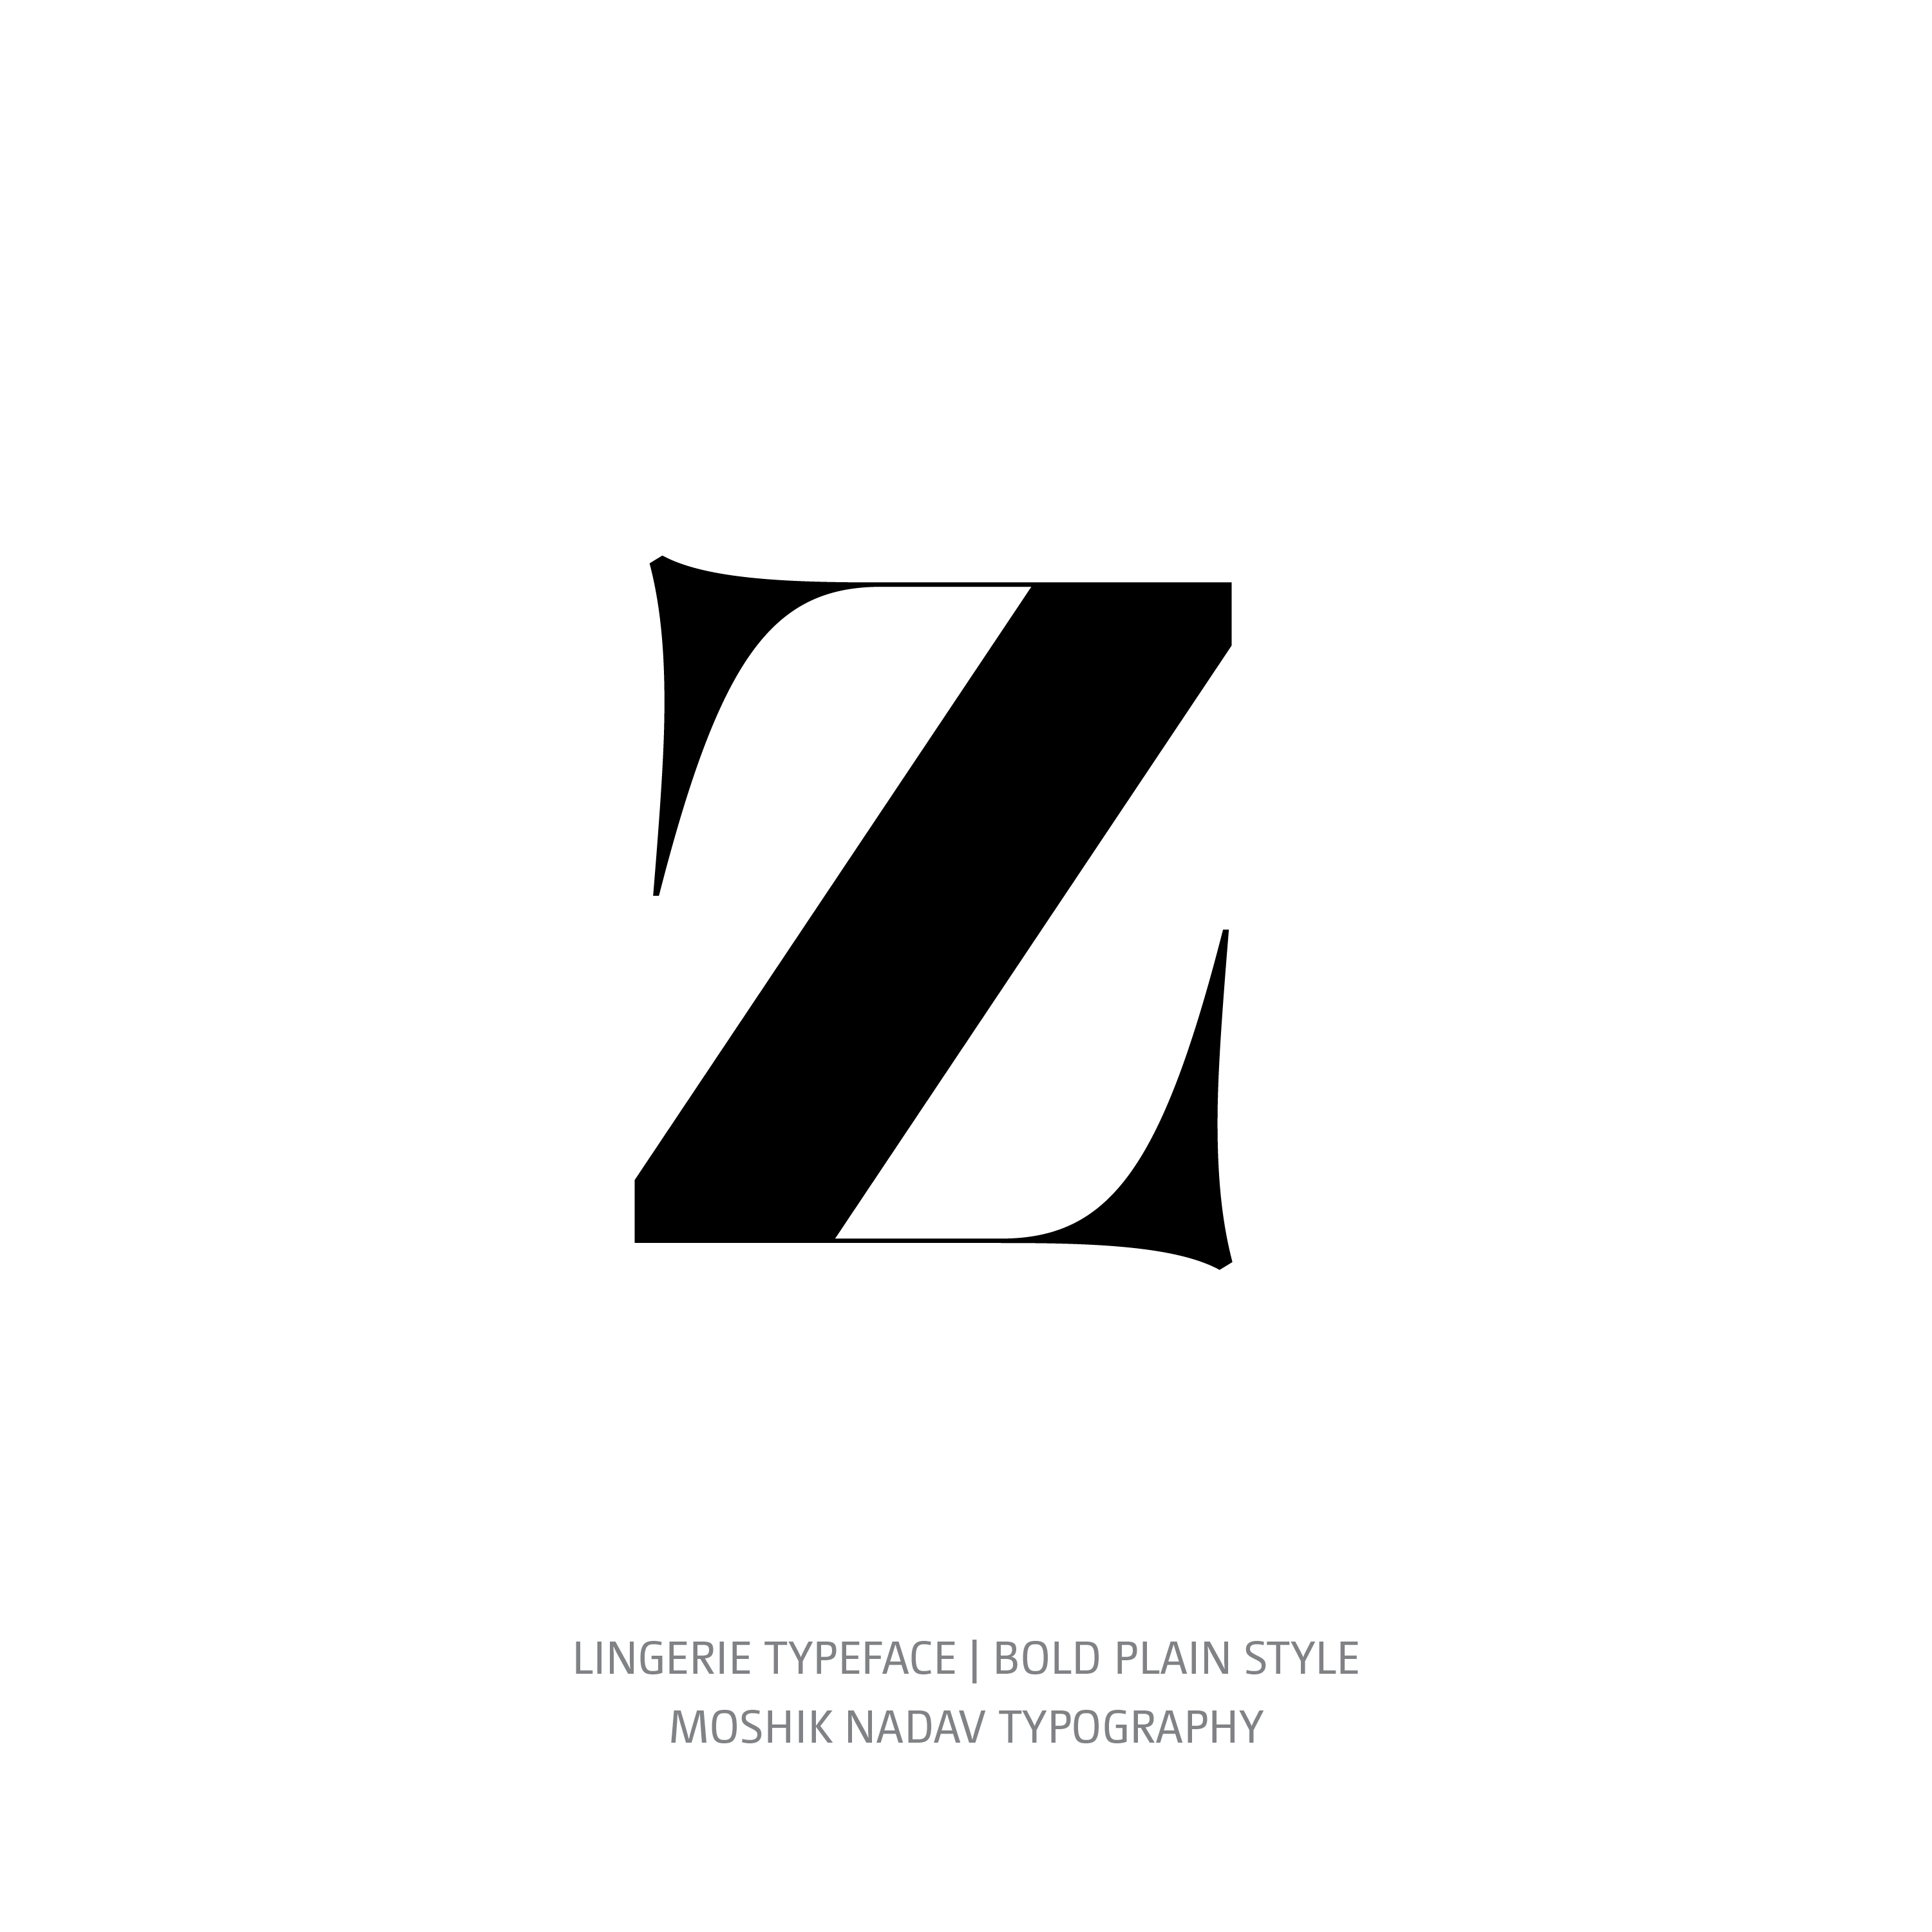 Lingerie Typeface Bold Plain z